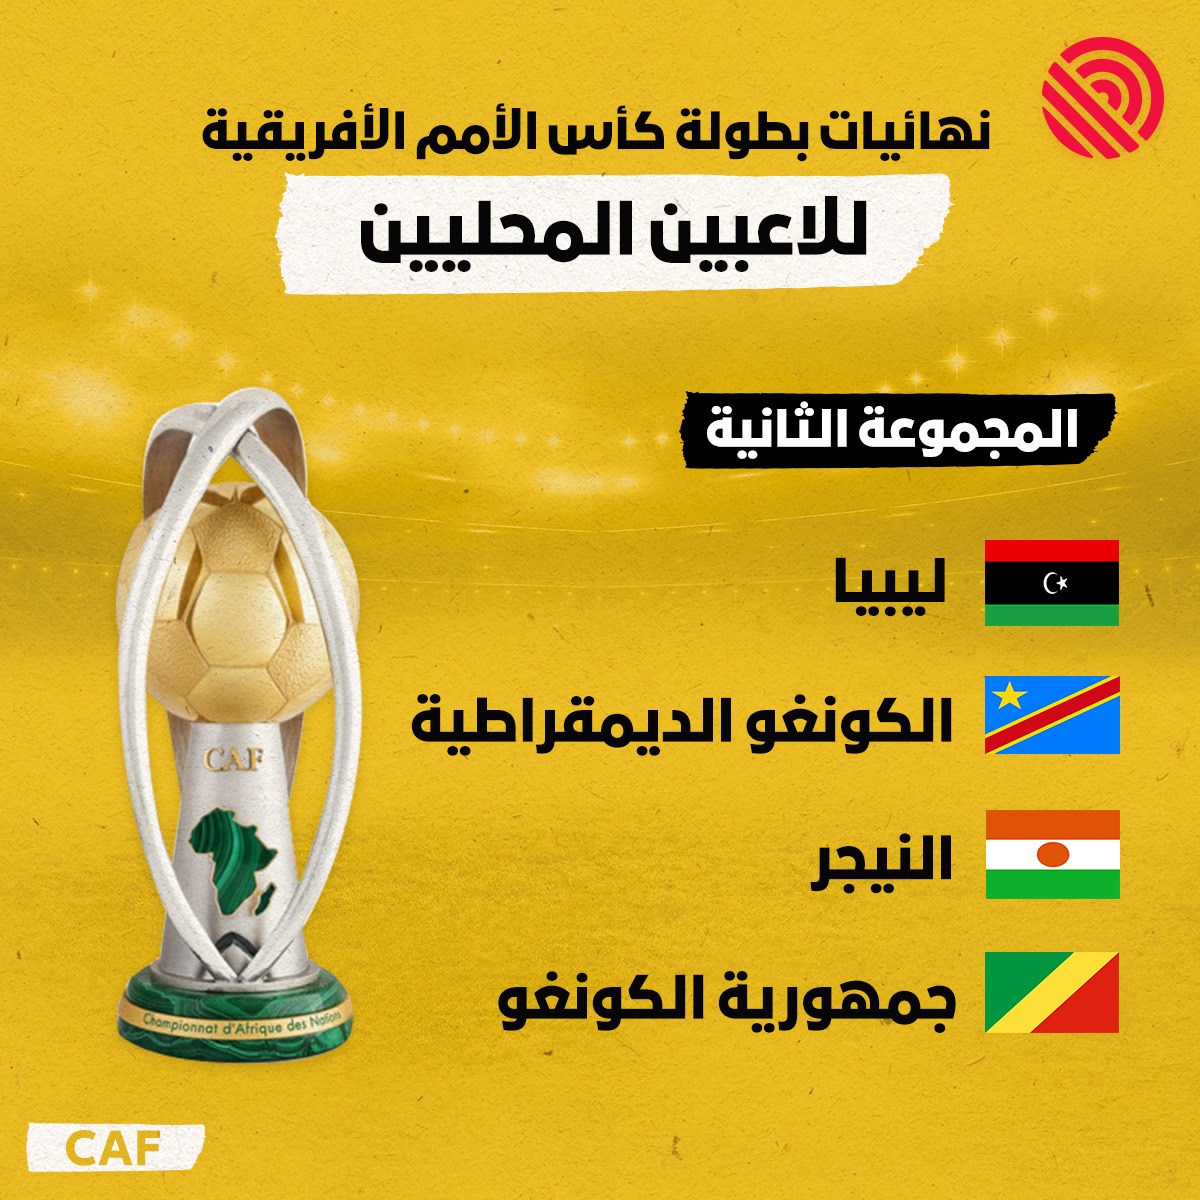 نهائيات بطولة كأس الأمم الإفريقية